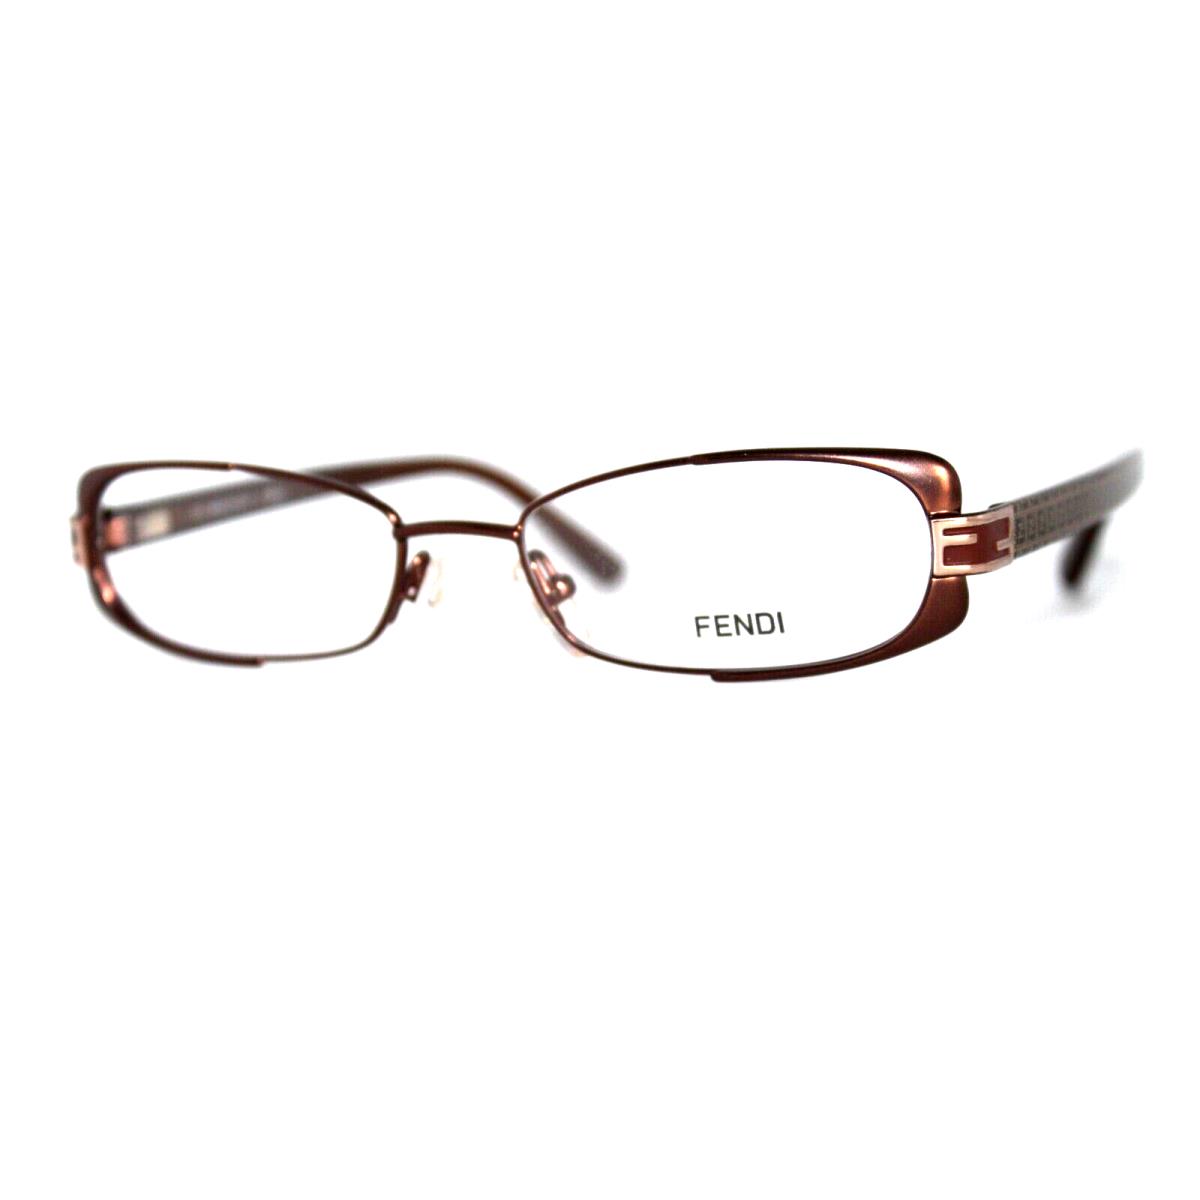 Fendi F943 208 Brown Mocha Eyeglasses Frames 49-16-135MM W/case